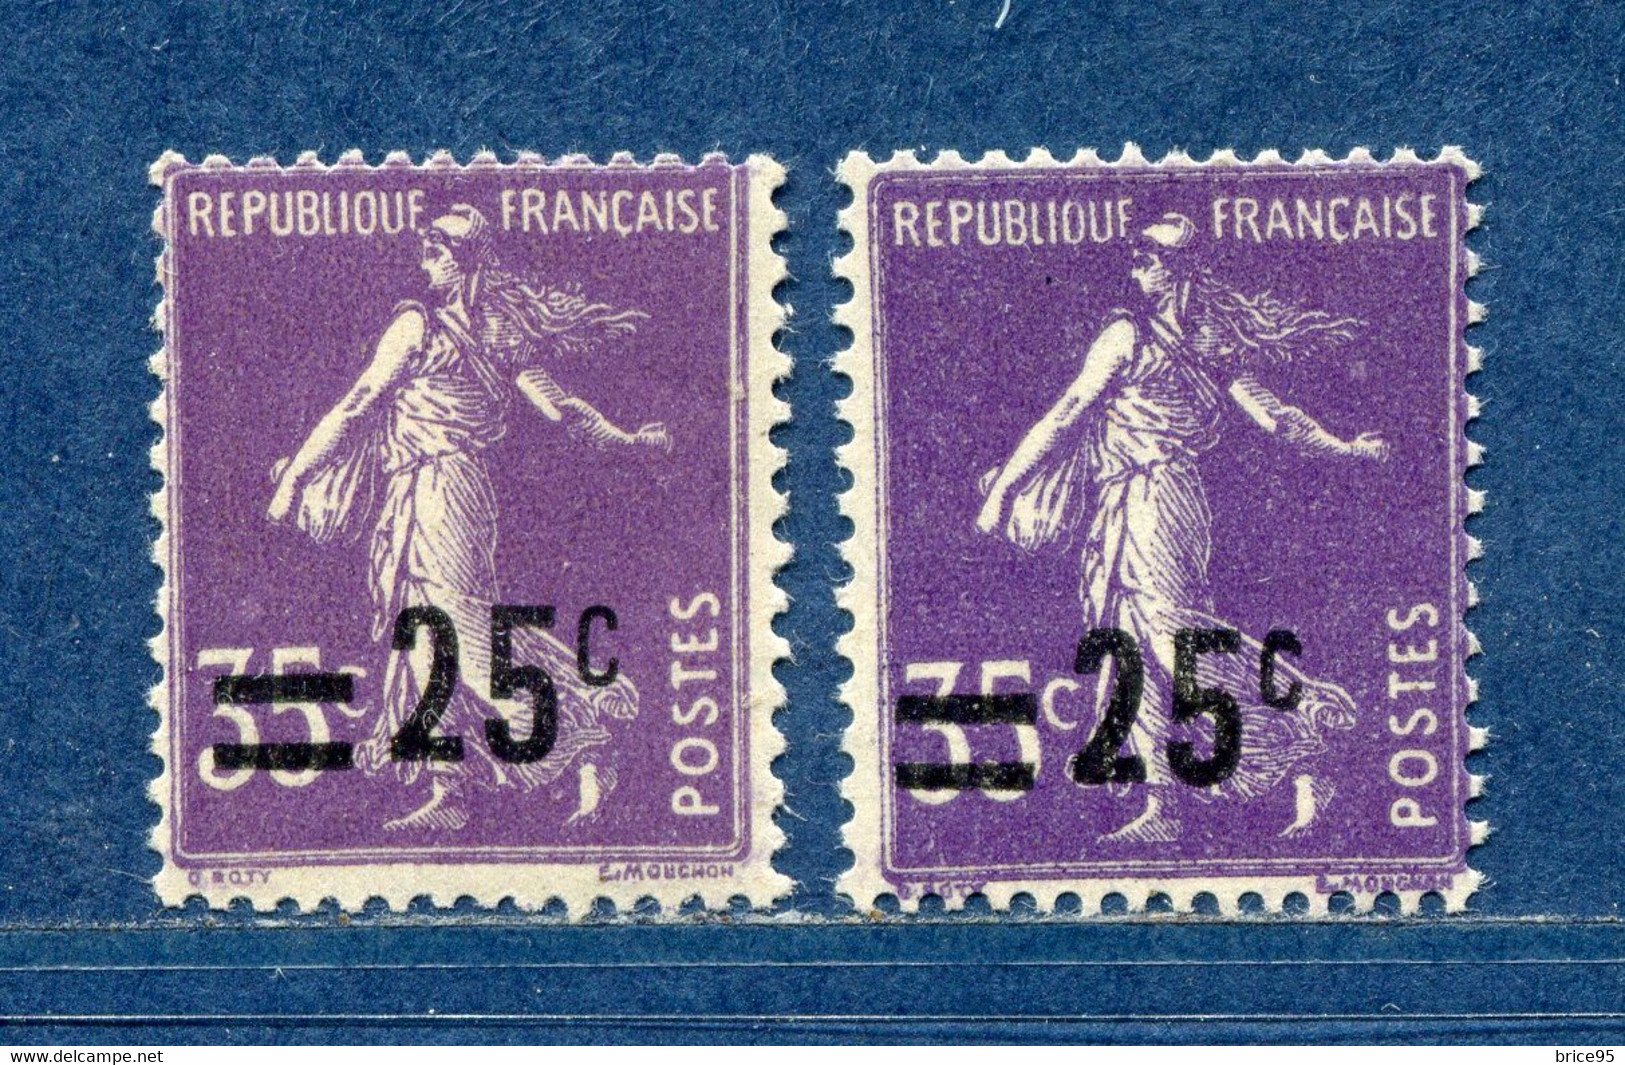 ⭐ France - Variété - YT N° 218 - Couleurs - Pétouilles - Neuf Sans Charnière - 1926 ⭐ - Neufs